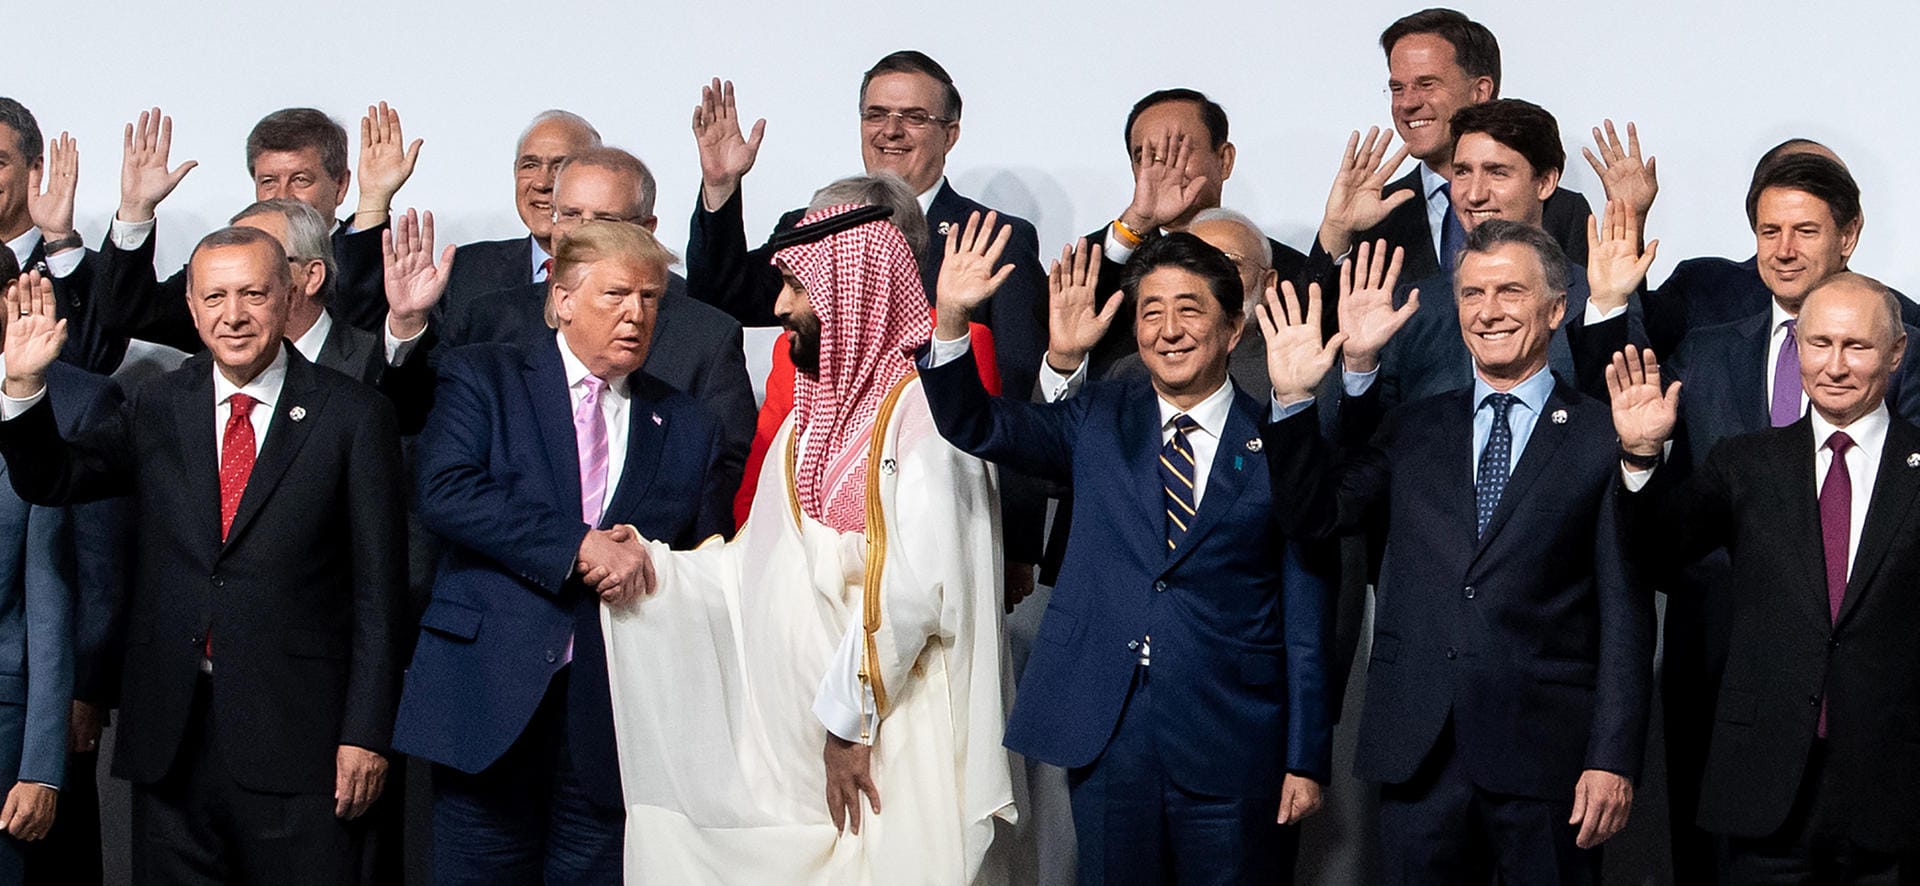 Er gilt als Mitwisser des Auftragsmordes an Jamal Khashoggi: Saudi-Arabiens Kronprinz Mohammed bin Salman. Dass er beim G20-Gipfel ausgerechnet in der ersten Reihe steht, hat allerdings protokollarische Gründe: Denn der Saudi ist Gastgeber des nächsten Gipfels. Demonstrativ hingegen scheint Trumps Händeschüttel-Geste, wo alle anderen schon winken. Der US-Präsident braucht den Prinzen als Verbündeten gegen den Iran.